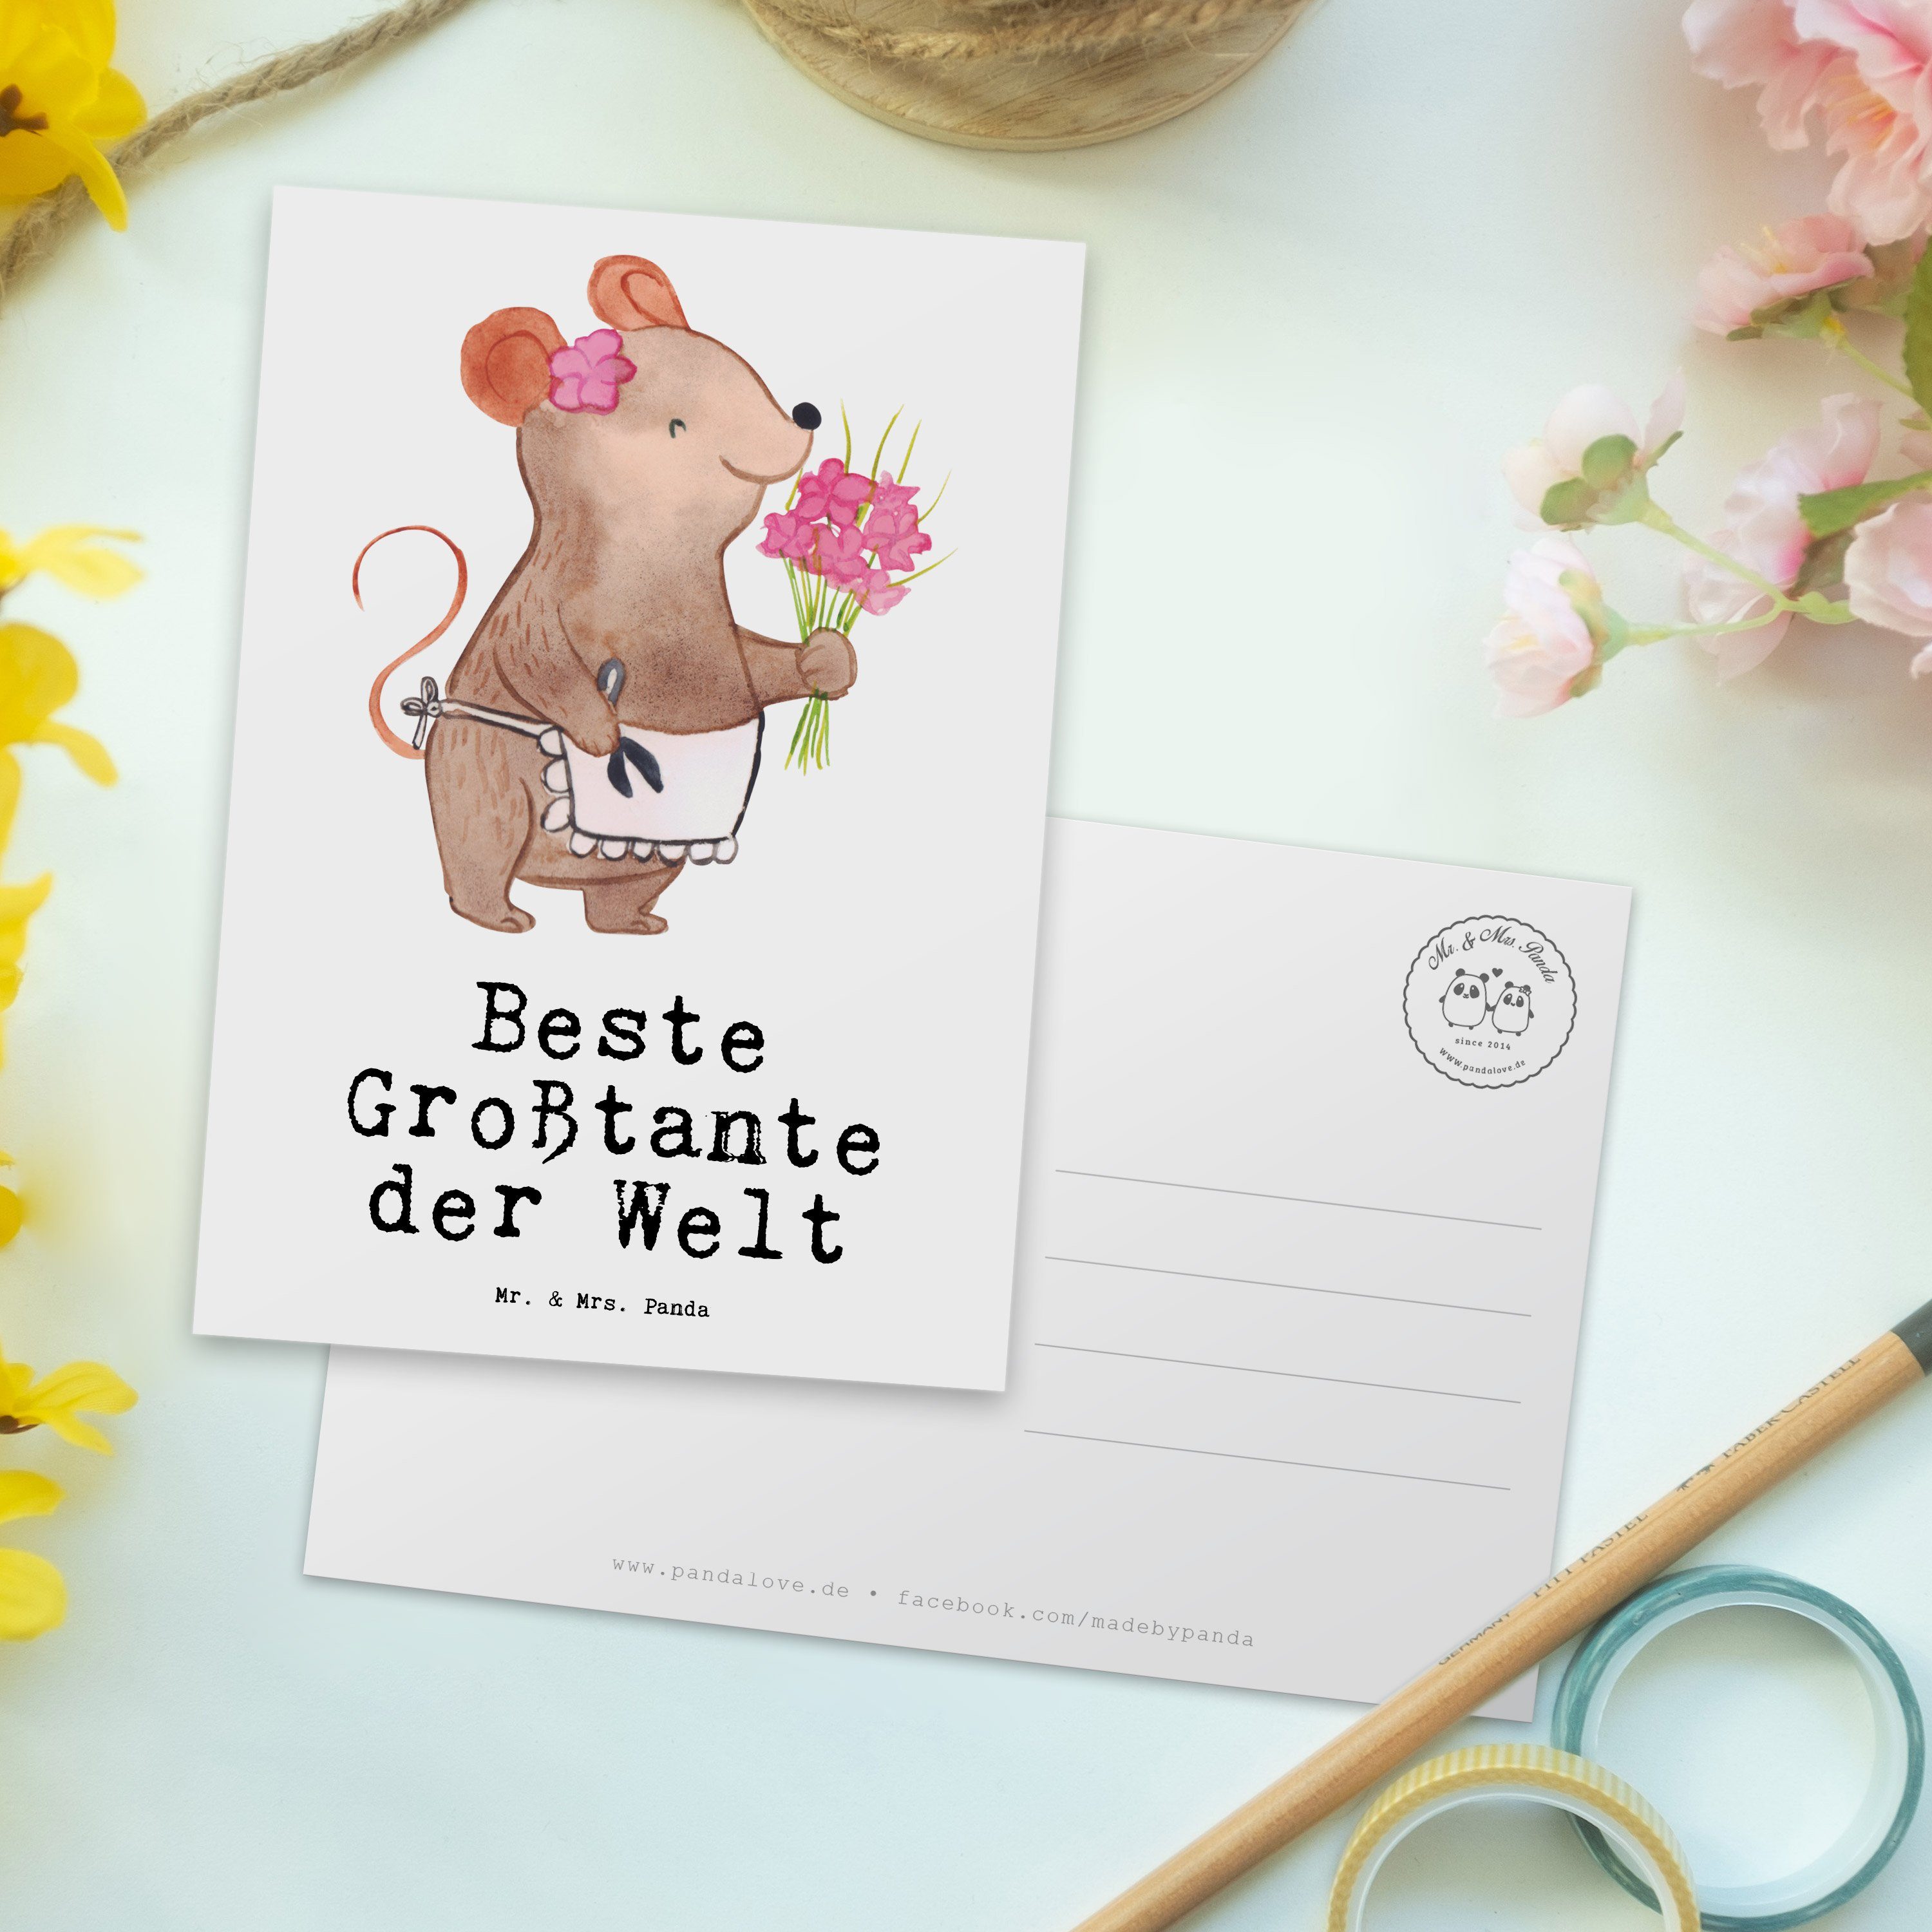 Mr. & Mrs. Panda der Geschenkk Postkarte Weiß Welt Geschenk, Einladung, Beste Maus - - Großtante